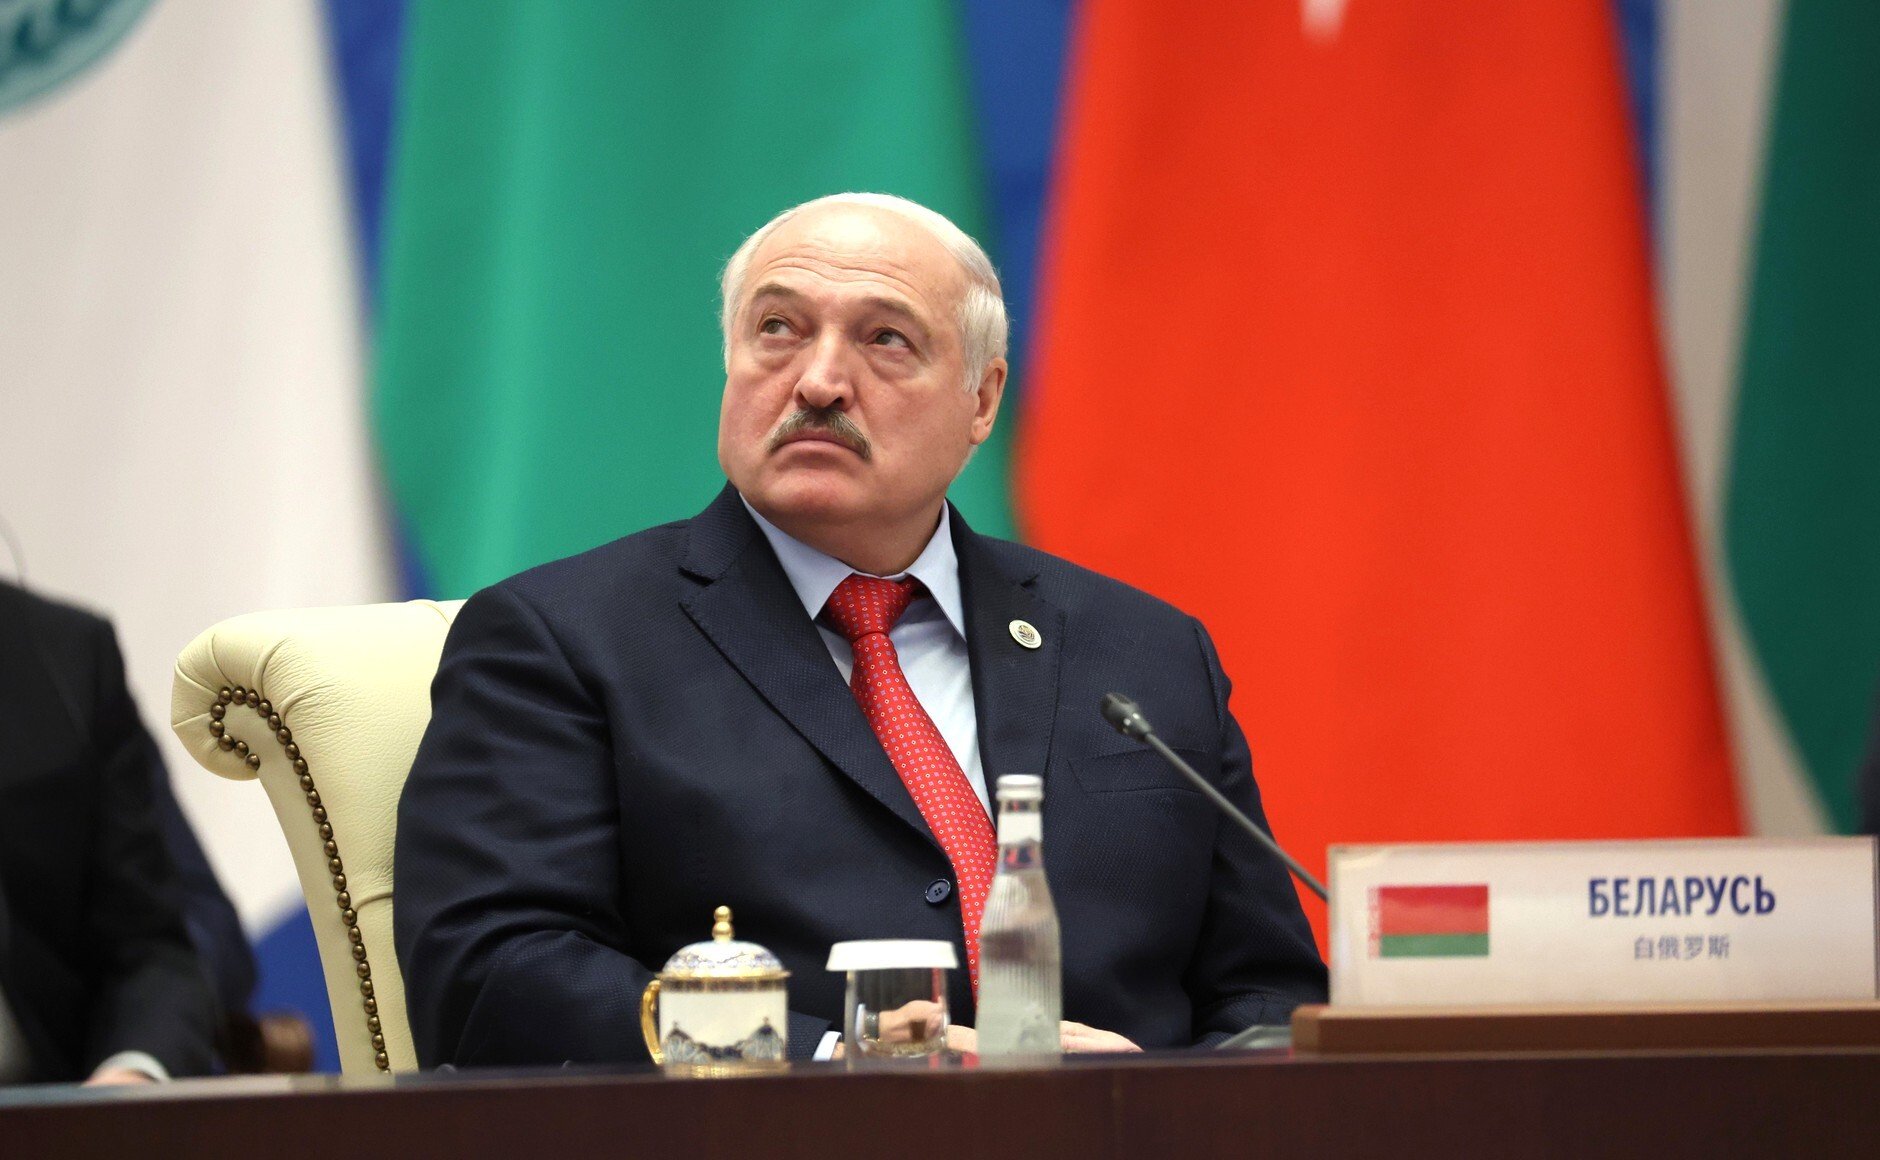 Mobilitzarà Lukaixenko la població de Bielorússia per a la guerra d'Ucraïna com ha fet Putin?